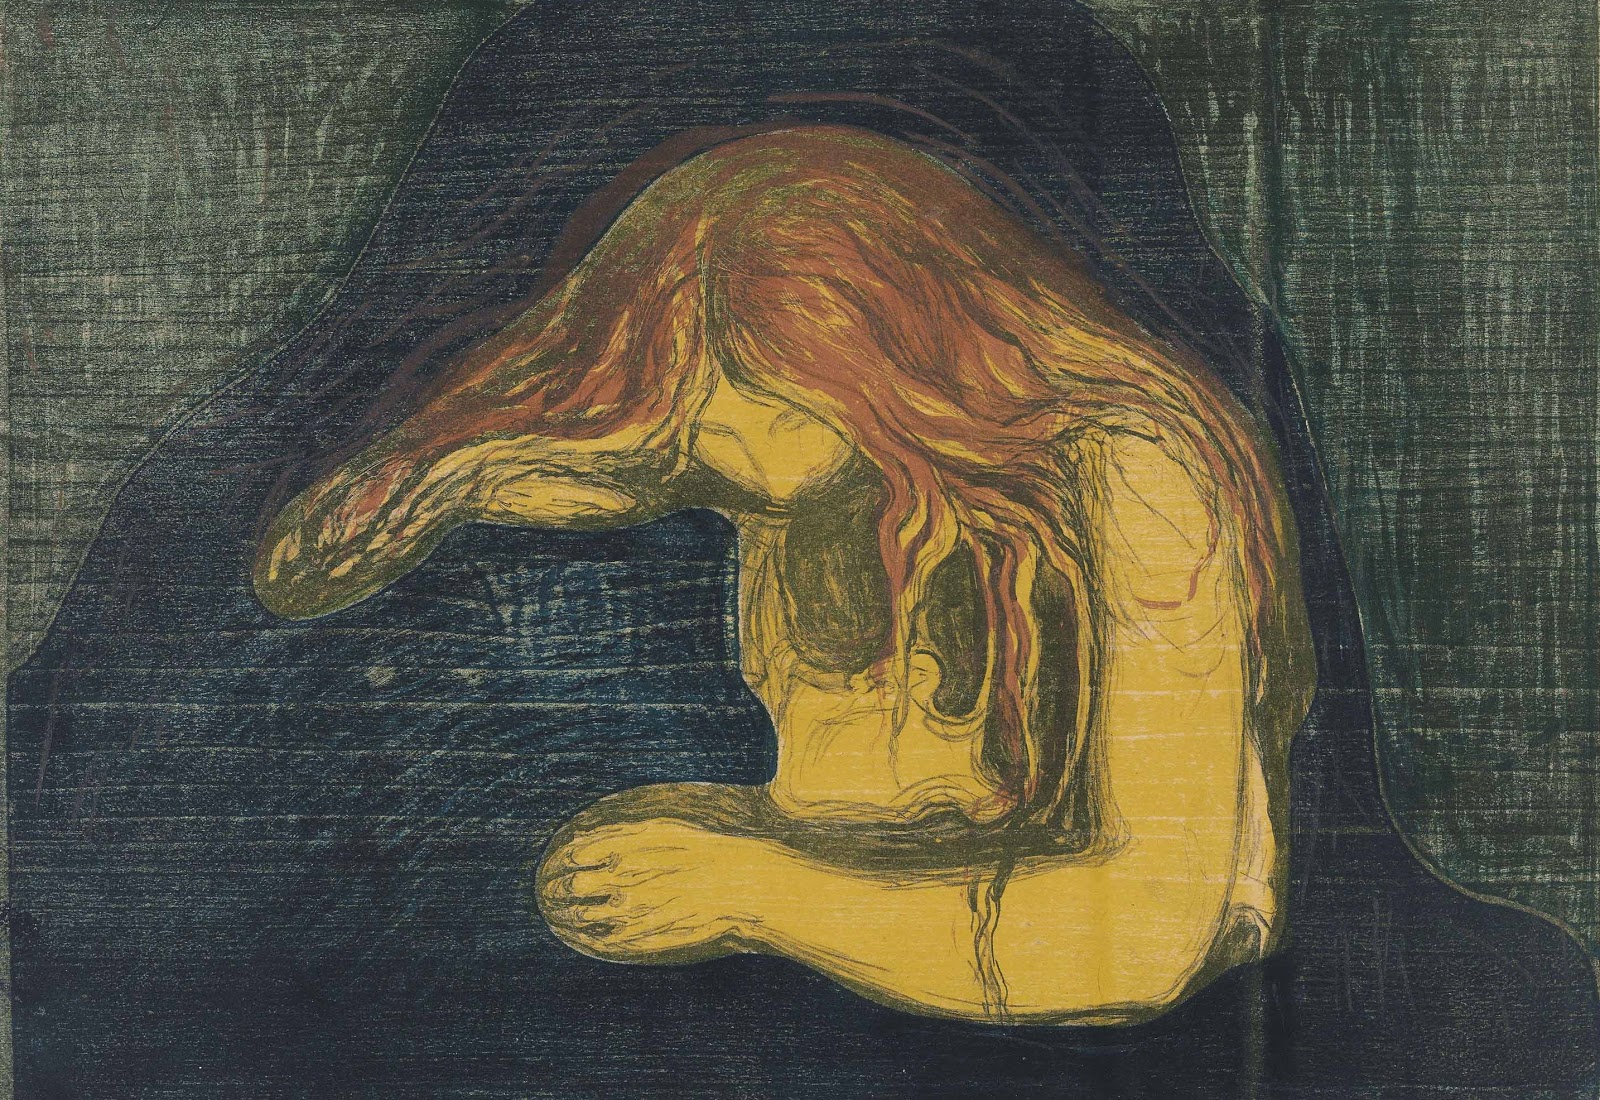 Edvard+Munch-1863-1944 (77).jpg